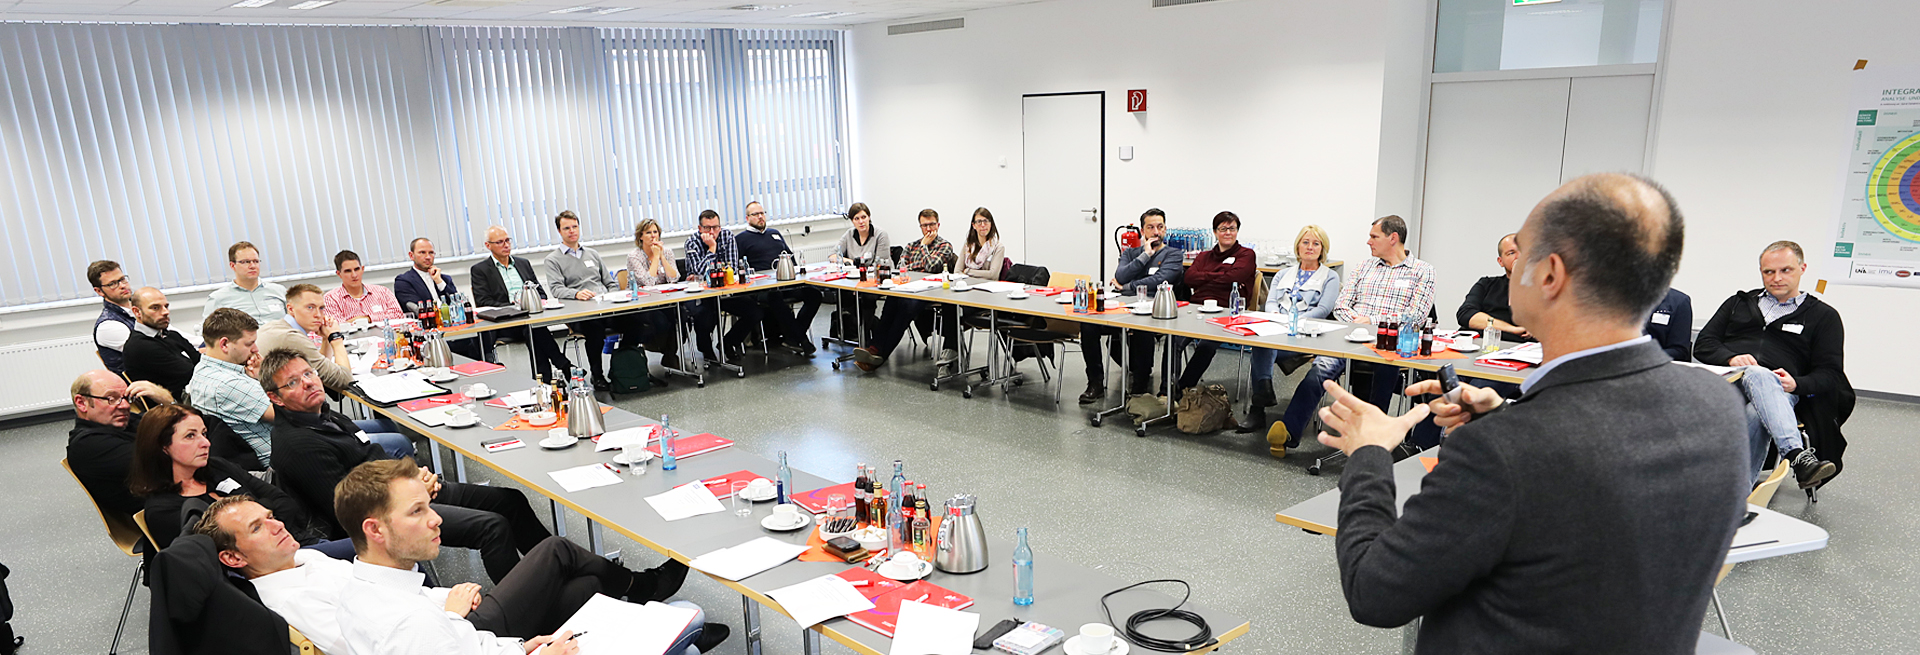 Seminar «Effektives Projektmanagement kompakt und praktikabel» in Göppingen